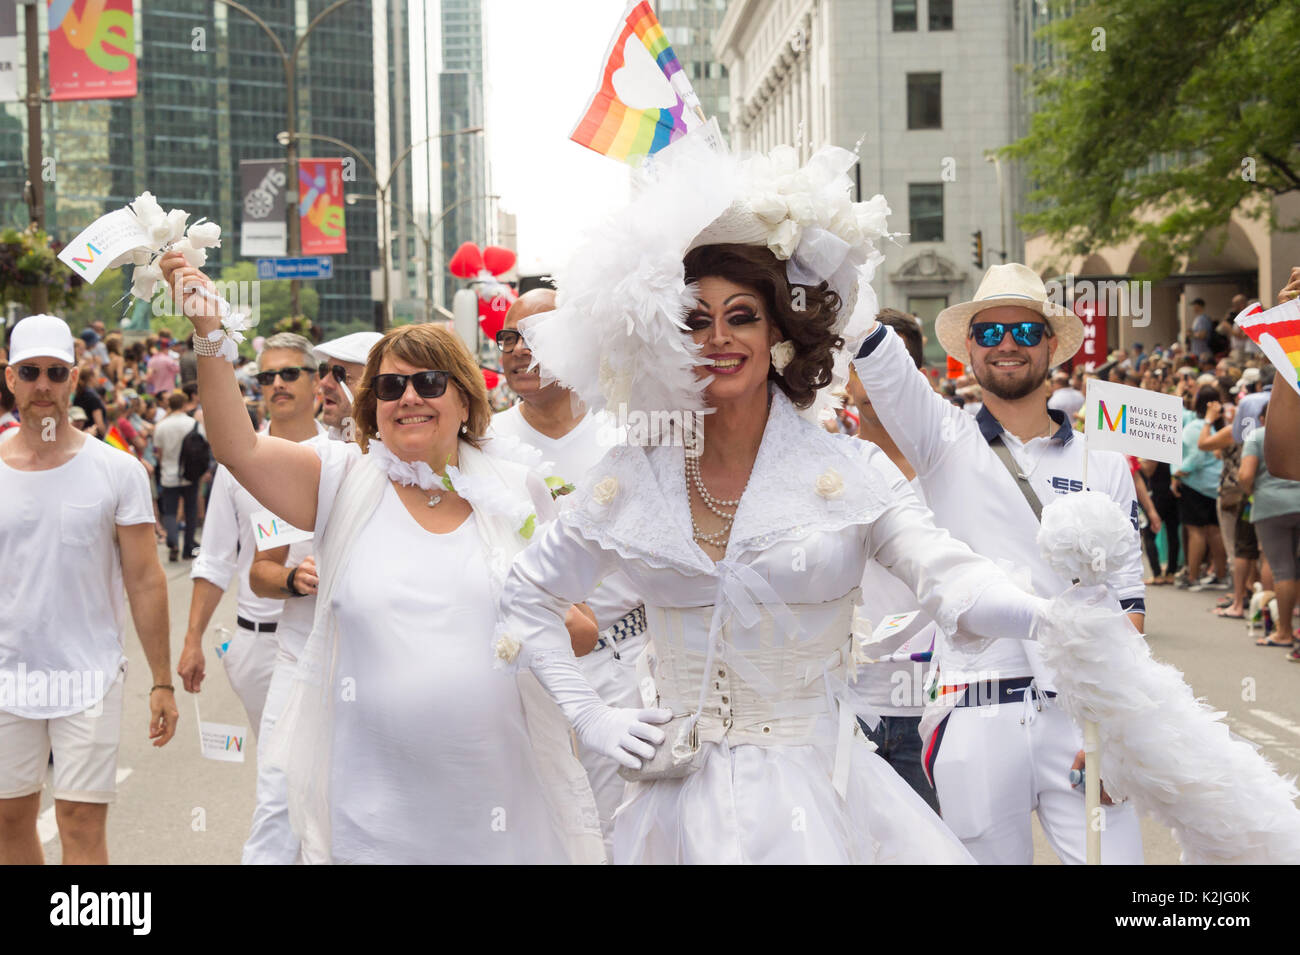 Montréal, le 20 août 2017 : drag queen habillés en blanc qui prennent part à la parade de la Fierté gaie de Montréal Banque D'Images